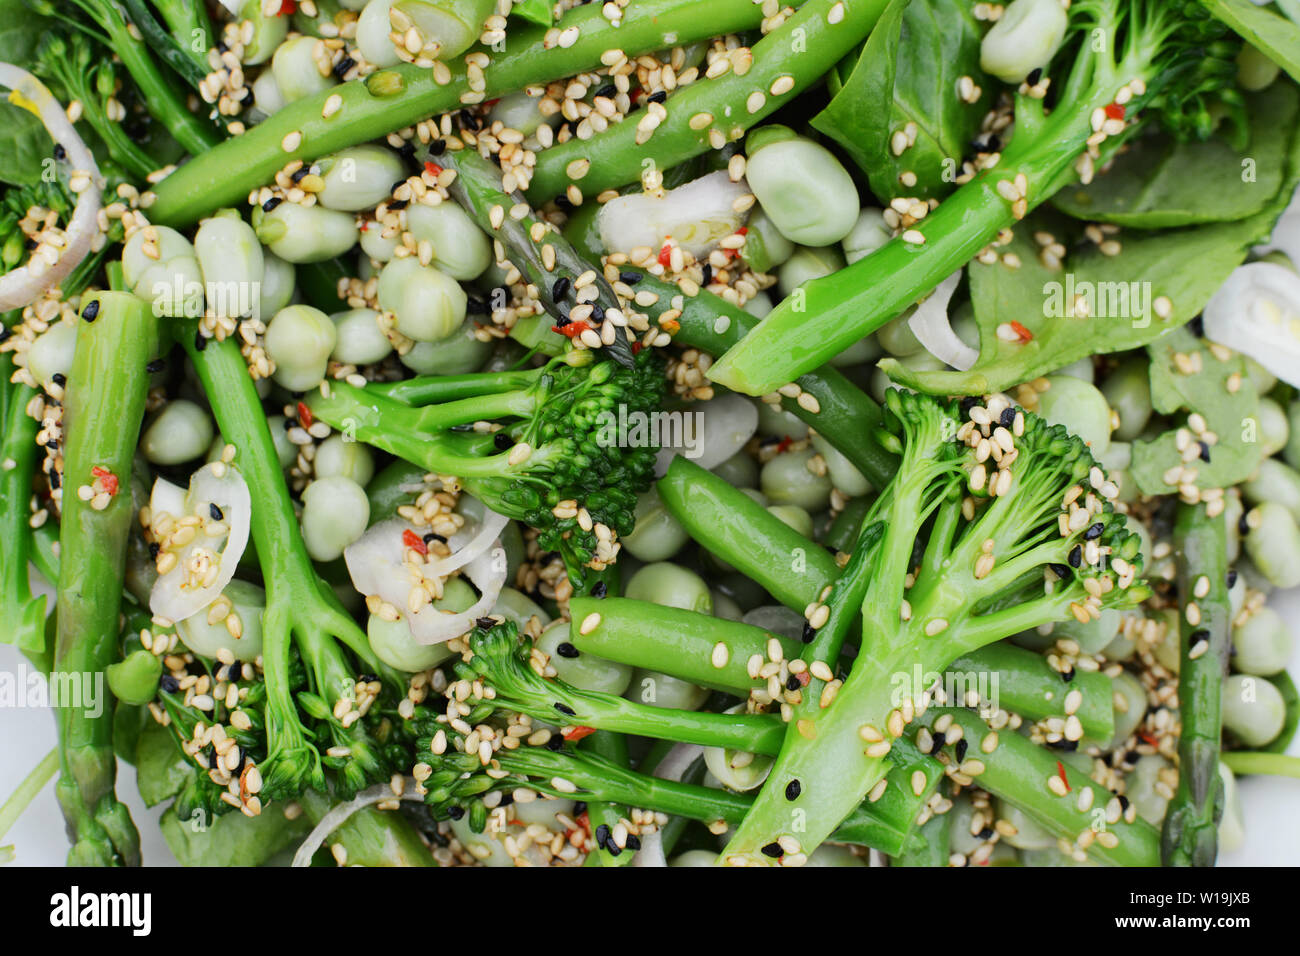 Vert printemps salade composée de tiges broccolini, fèves et haricots verts, parsemé de graines de sésame, graines de nigelle et de l'échalote Banque D'Images